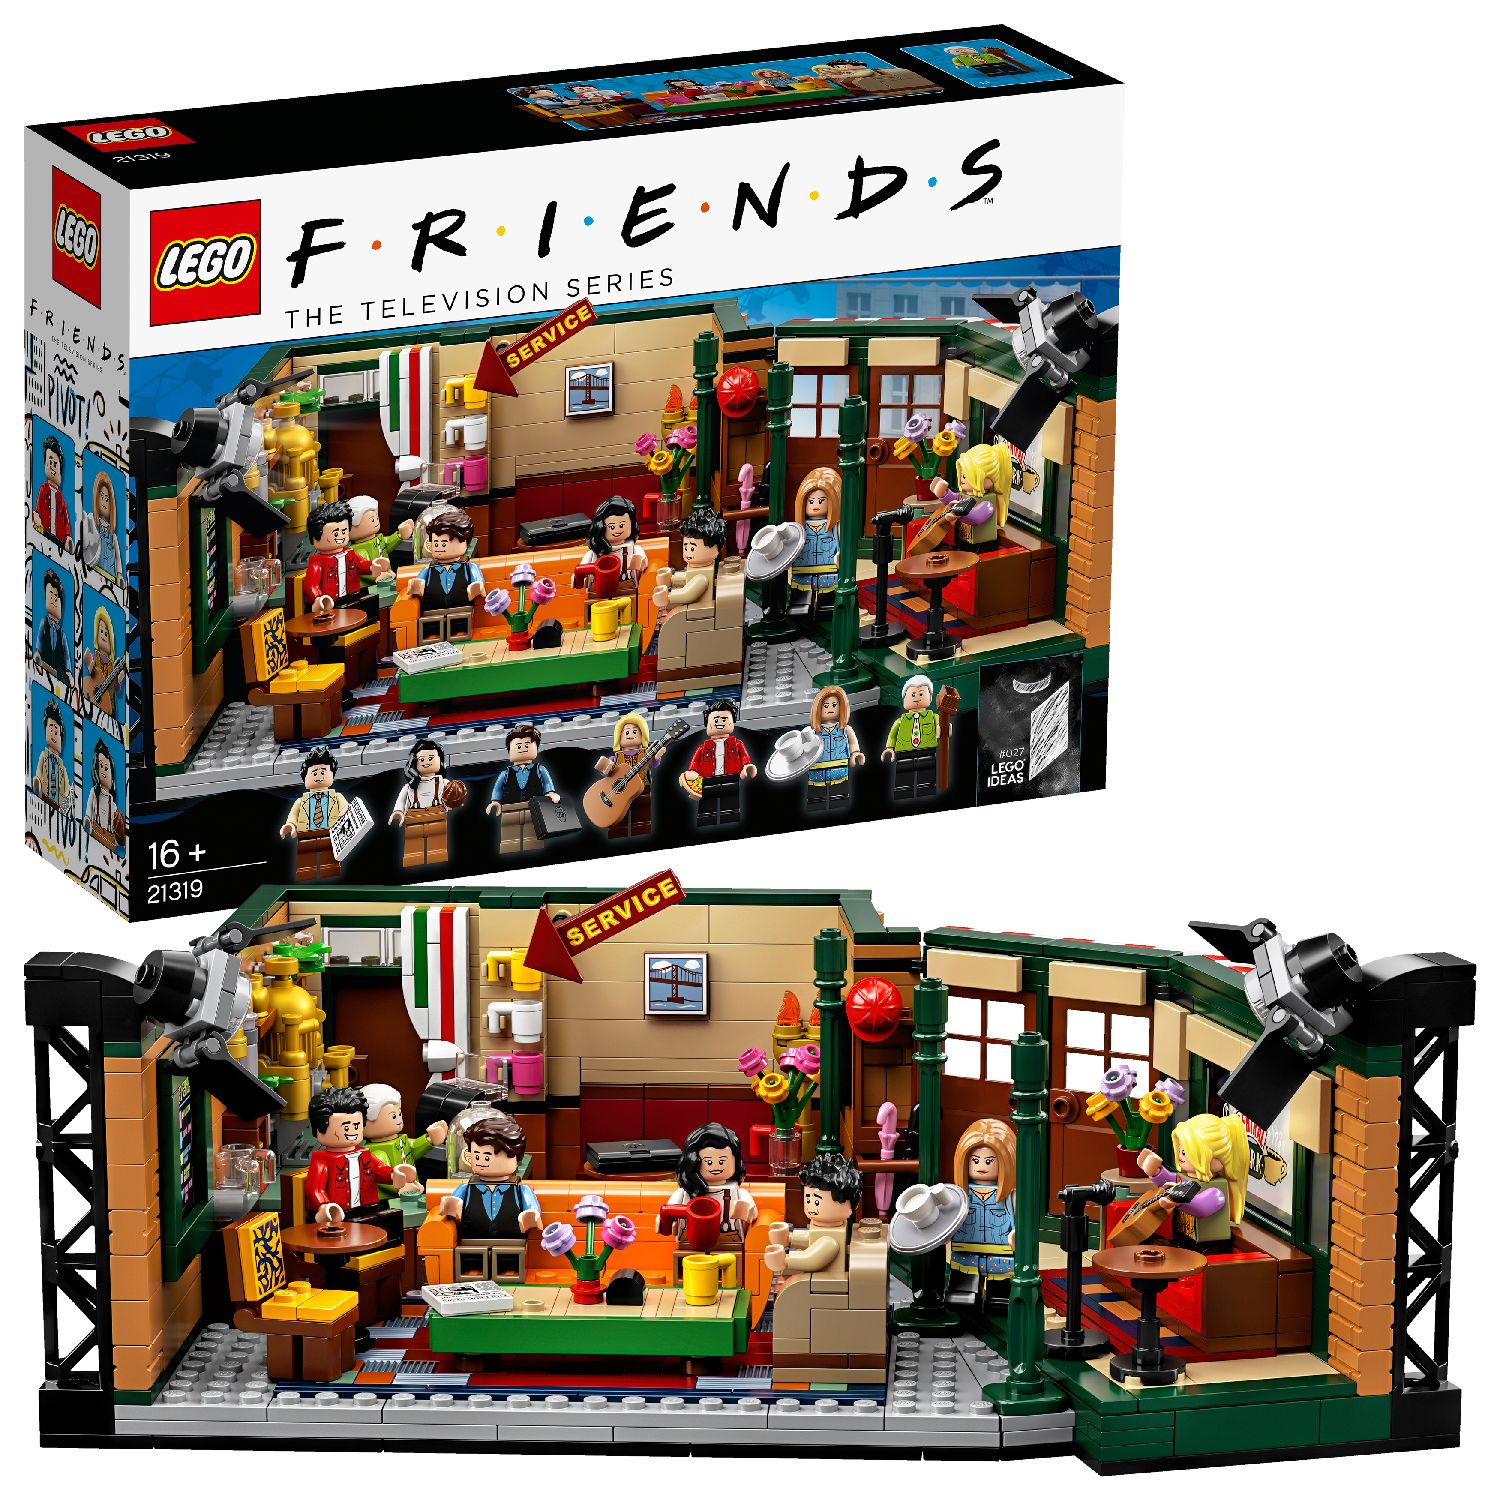 Lego 21319 - central perk - LEGO IDEAS, Lego